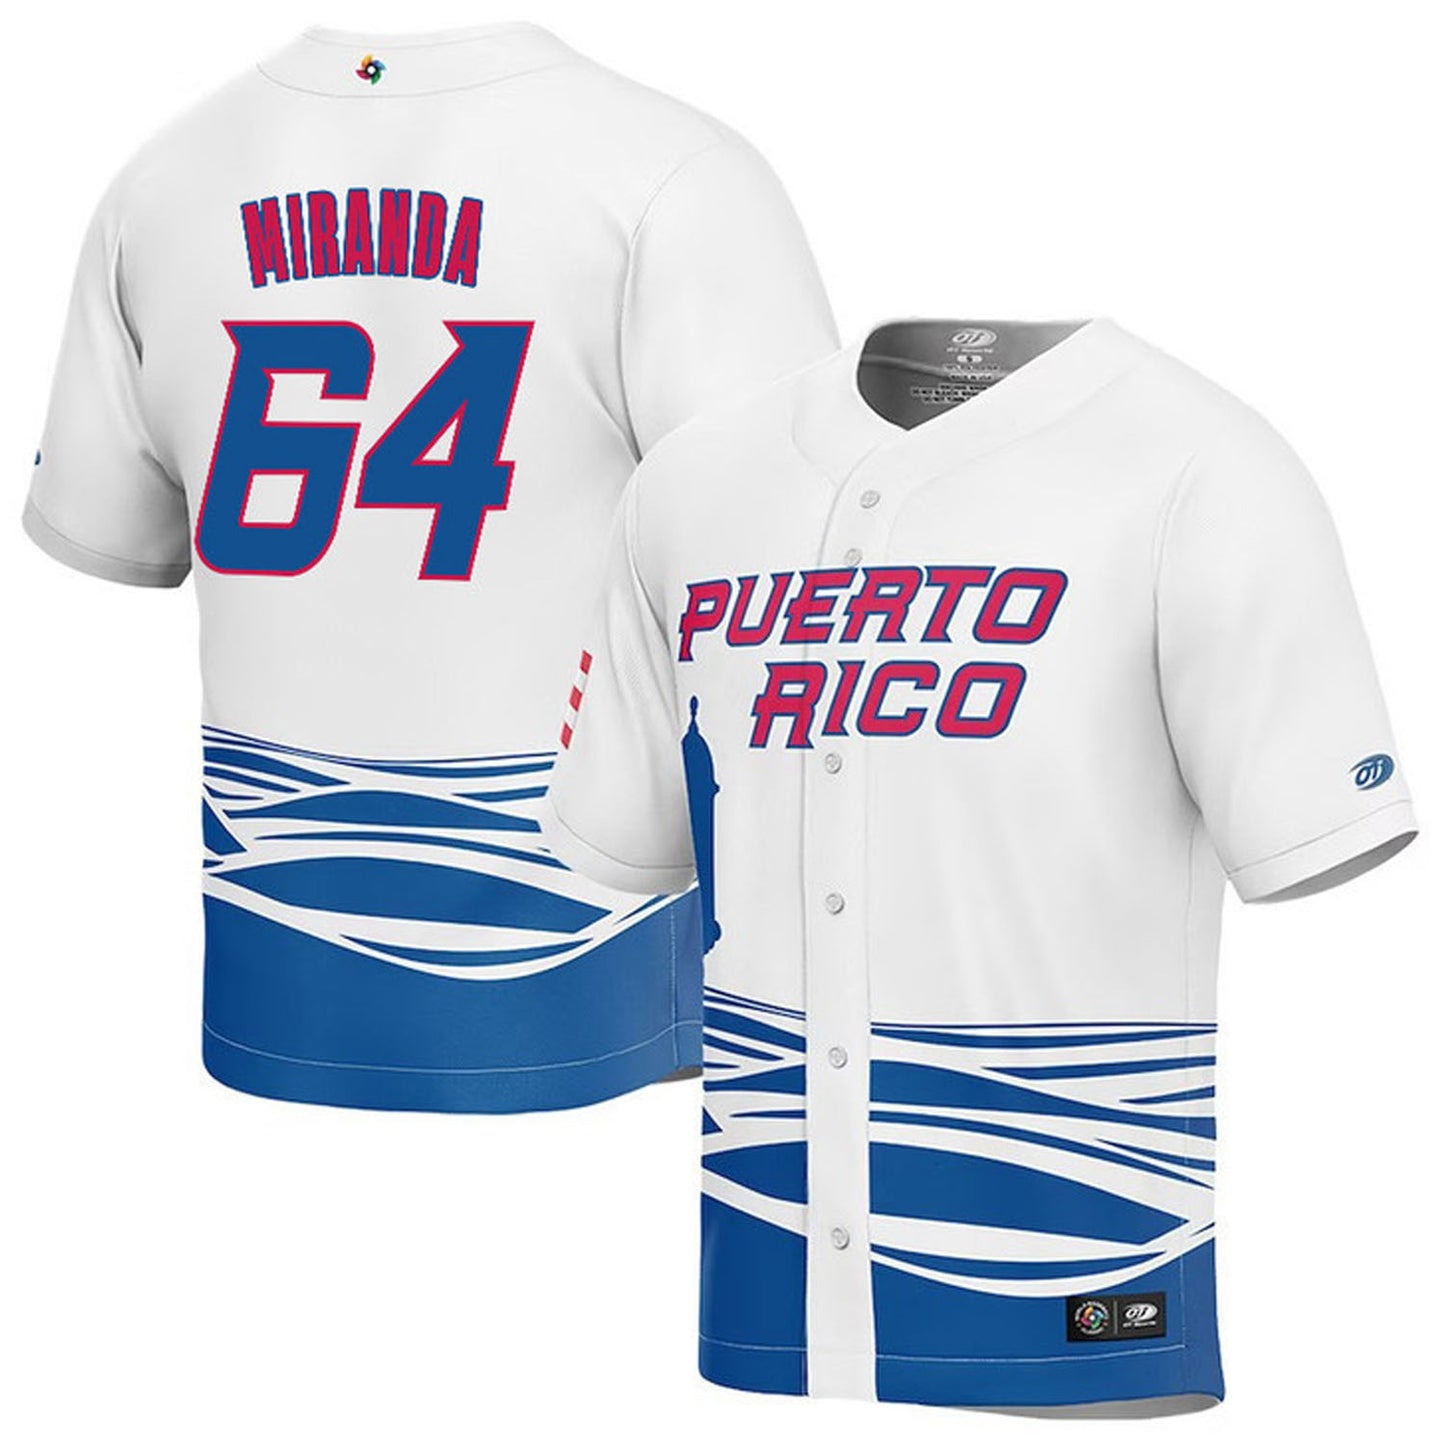 WBC José Miranda Puerto Rico 64 Jersey